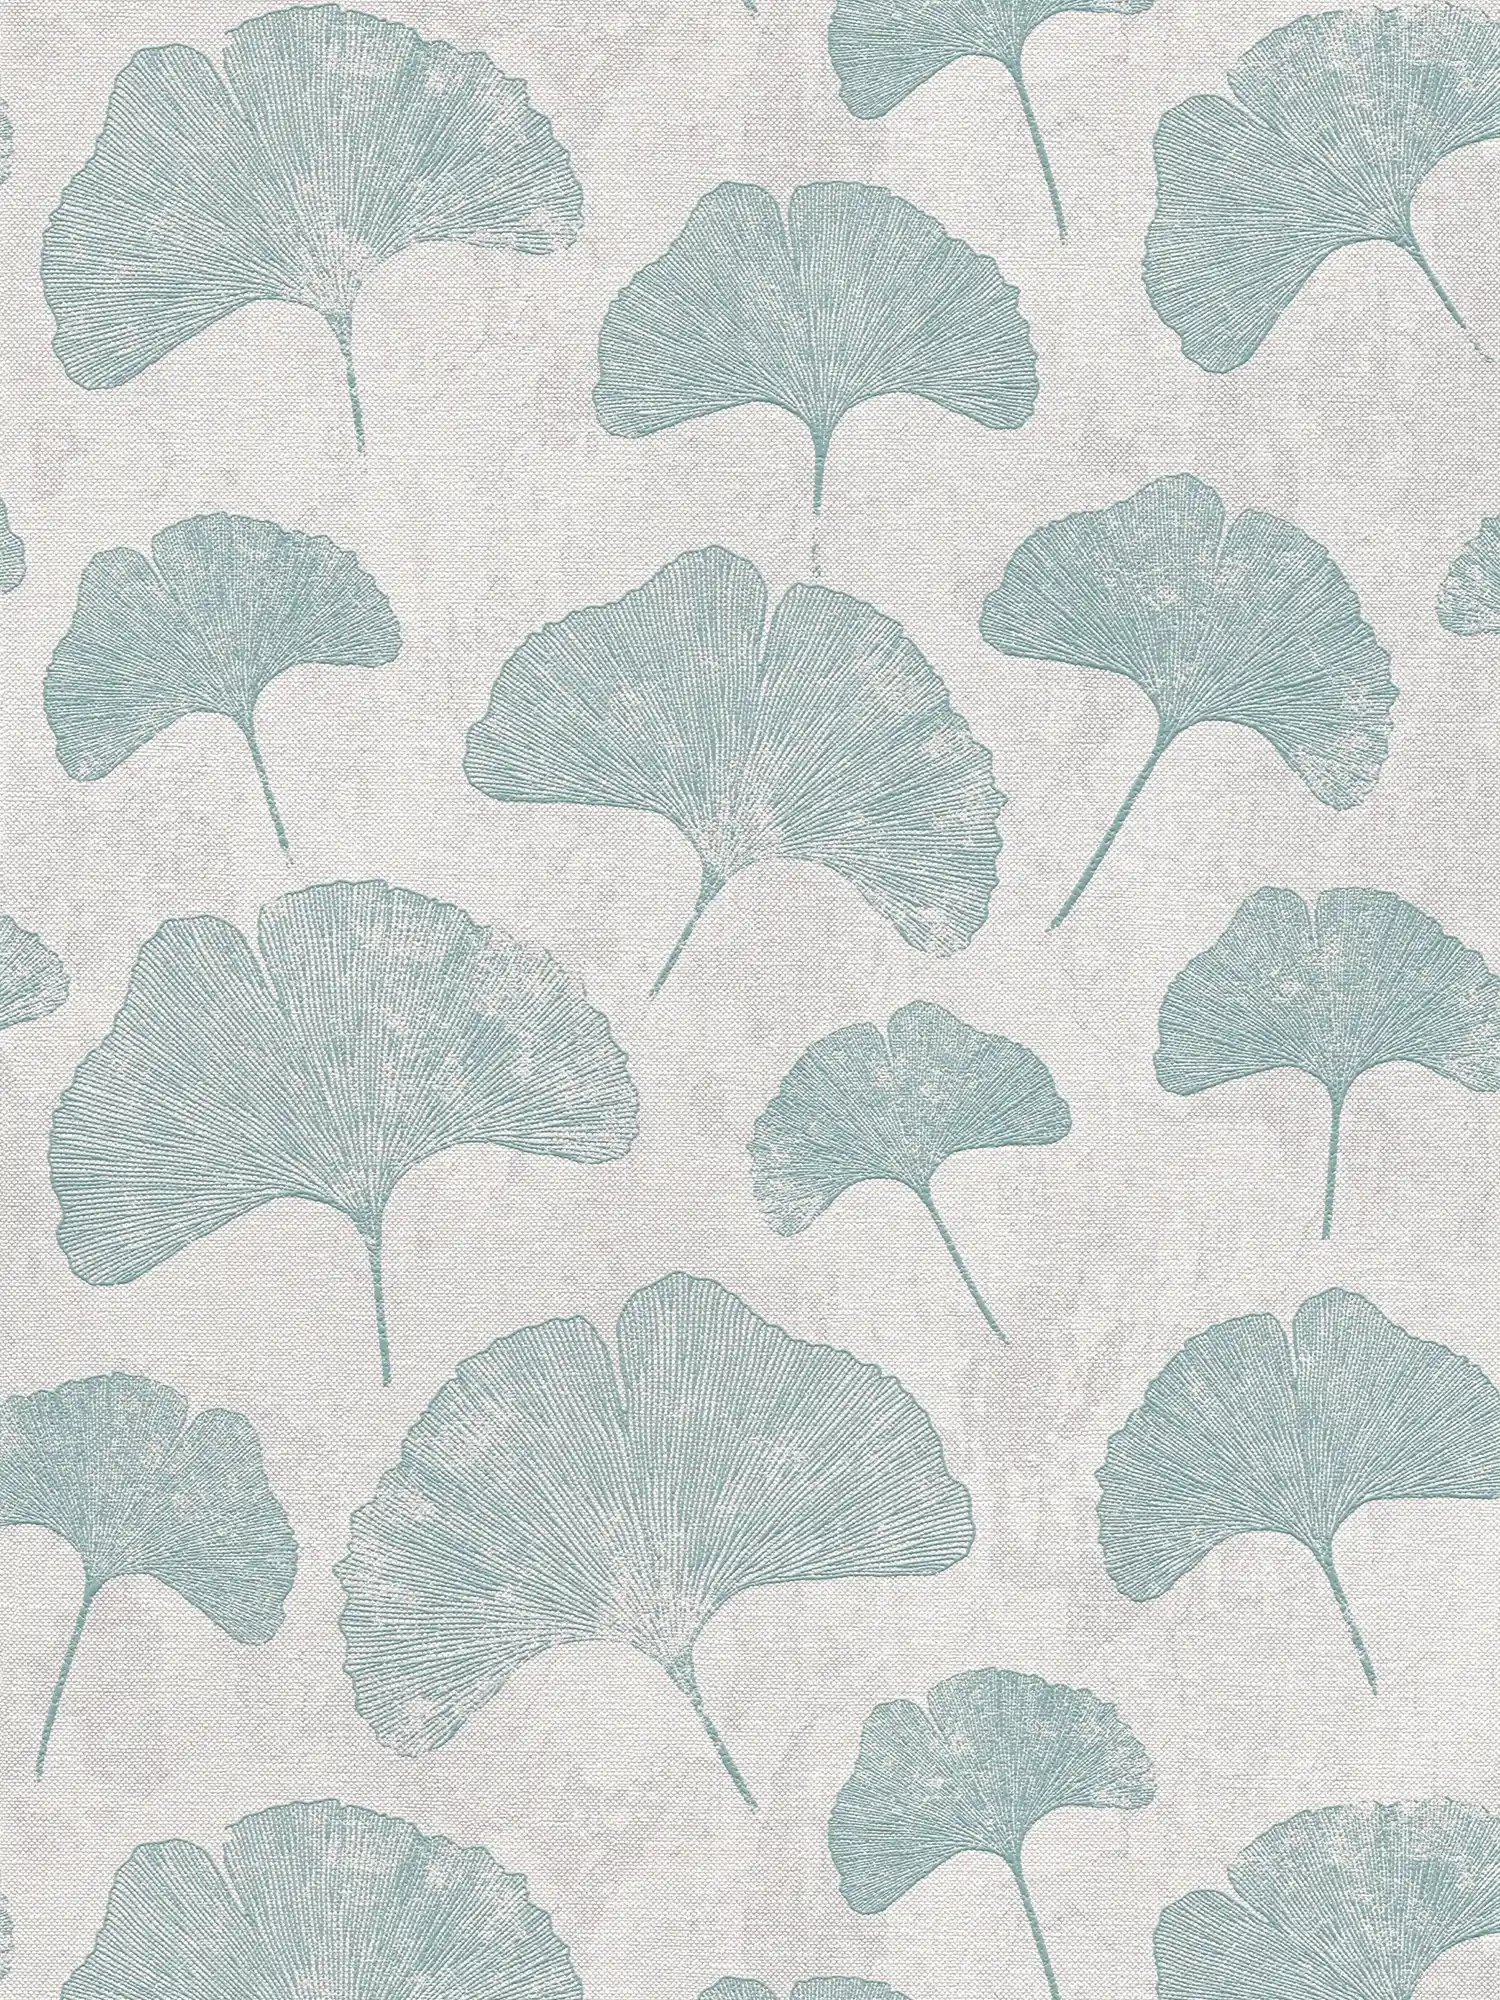 Floral leaves wallpaper matt textured - mint, grey
